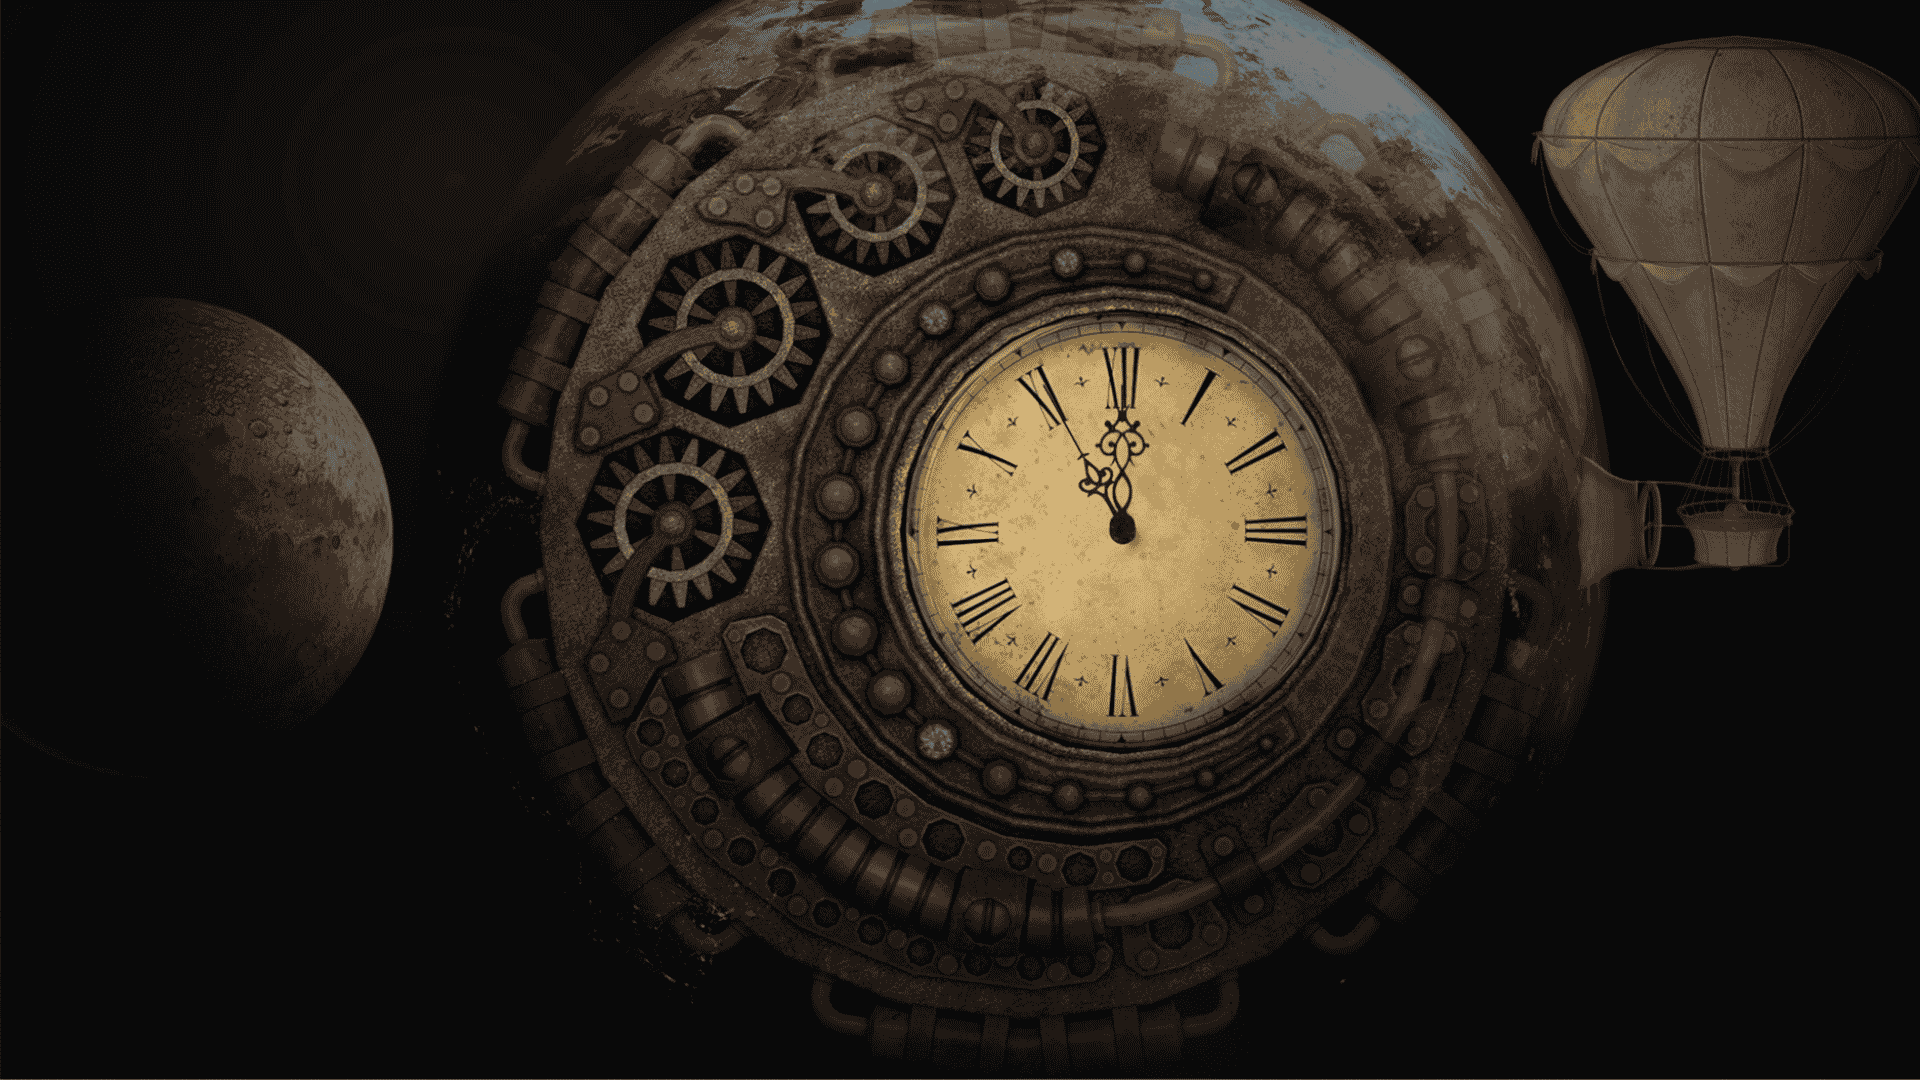 Um relógio e um balão antigo sendo representados junto com a Terra e a Lua, indicando a transição planetária e do tempo